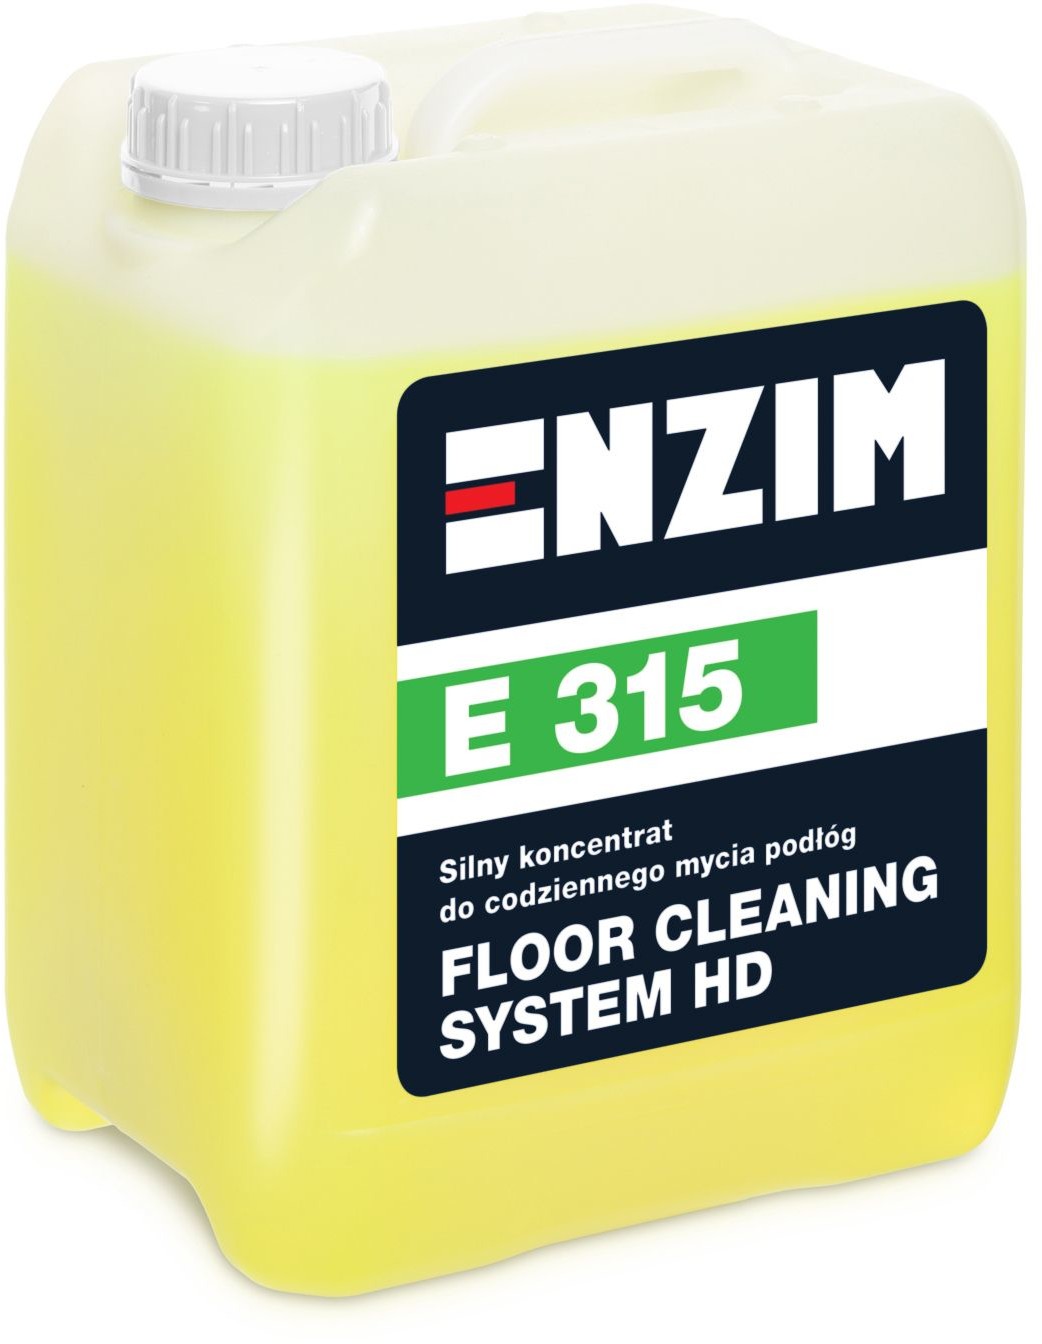 E315 - Silny koncentrat do codziennego mycia podłóg Floor Cleaning System HD 5L 5603155